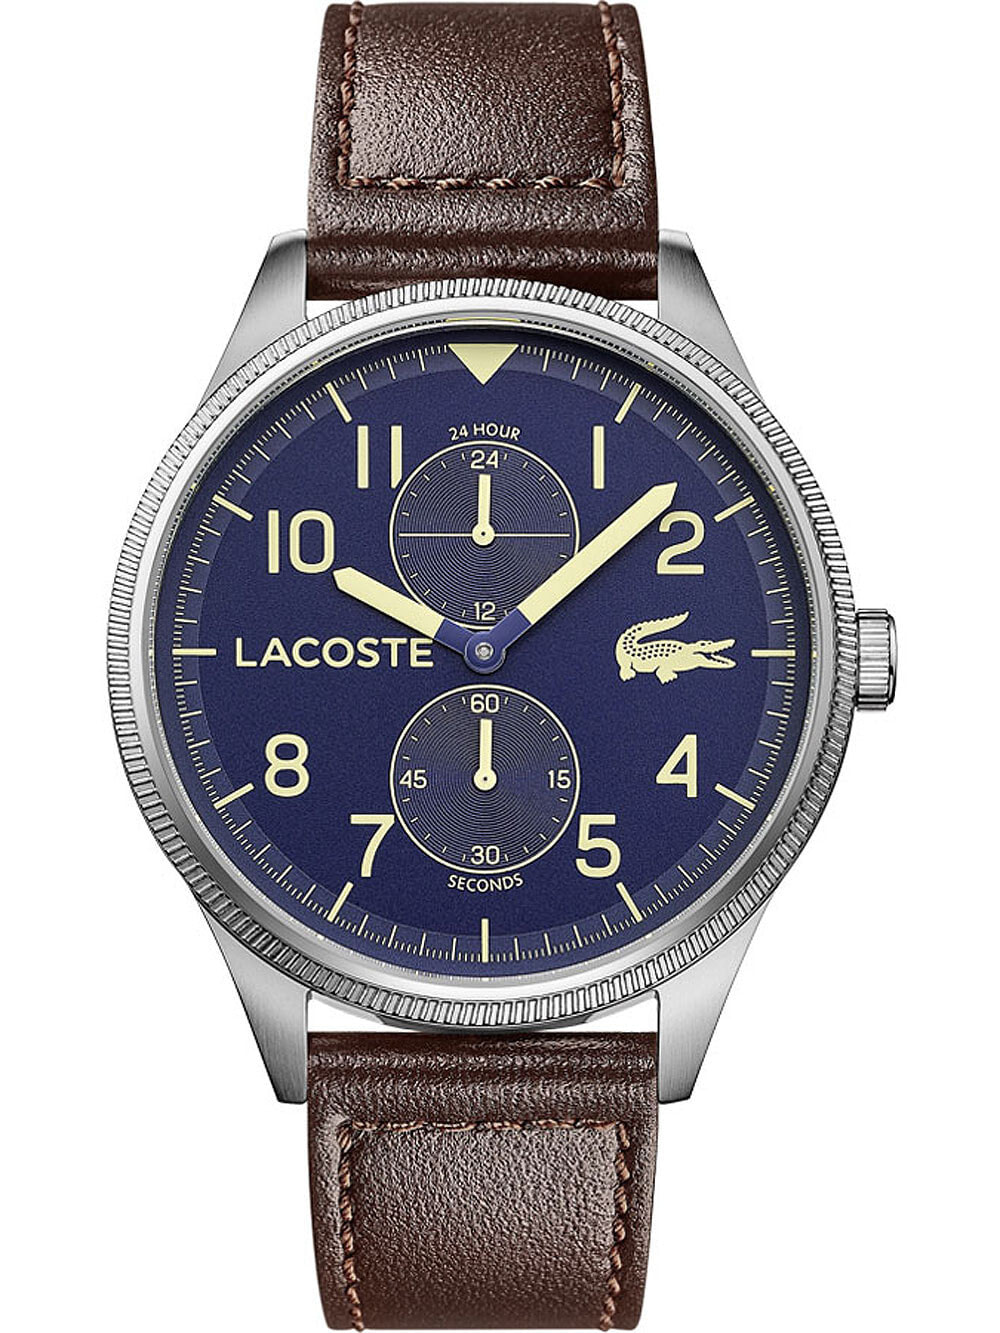 Мужские наручные часы с коричневым кожаным ремешком Lacoste 2011040 Continental mens 44mm 5ATM